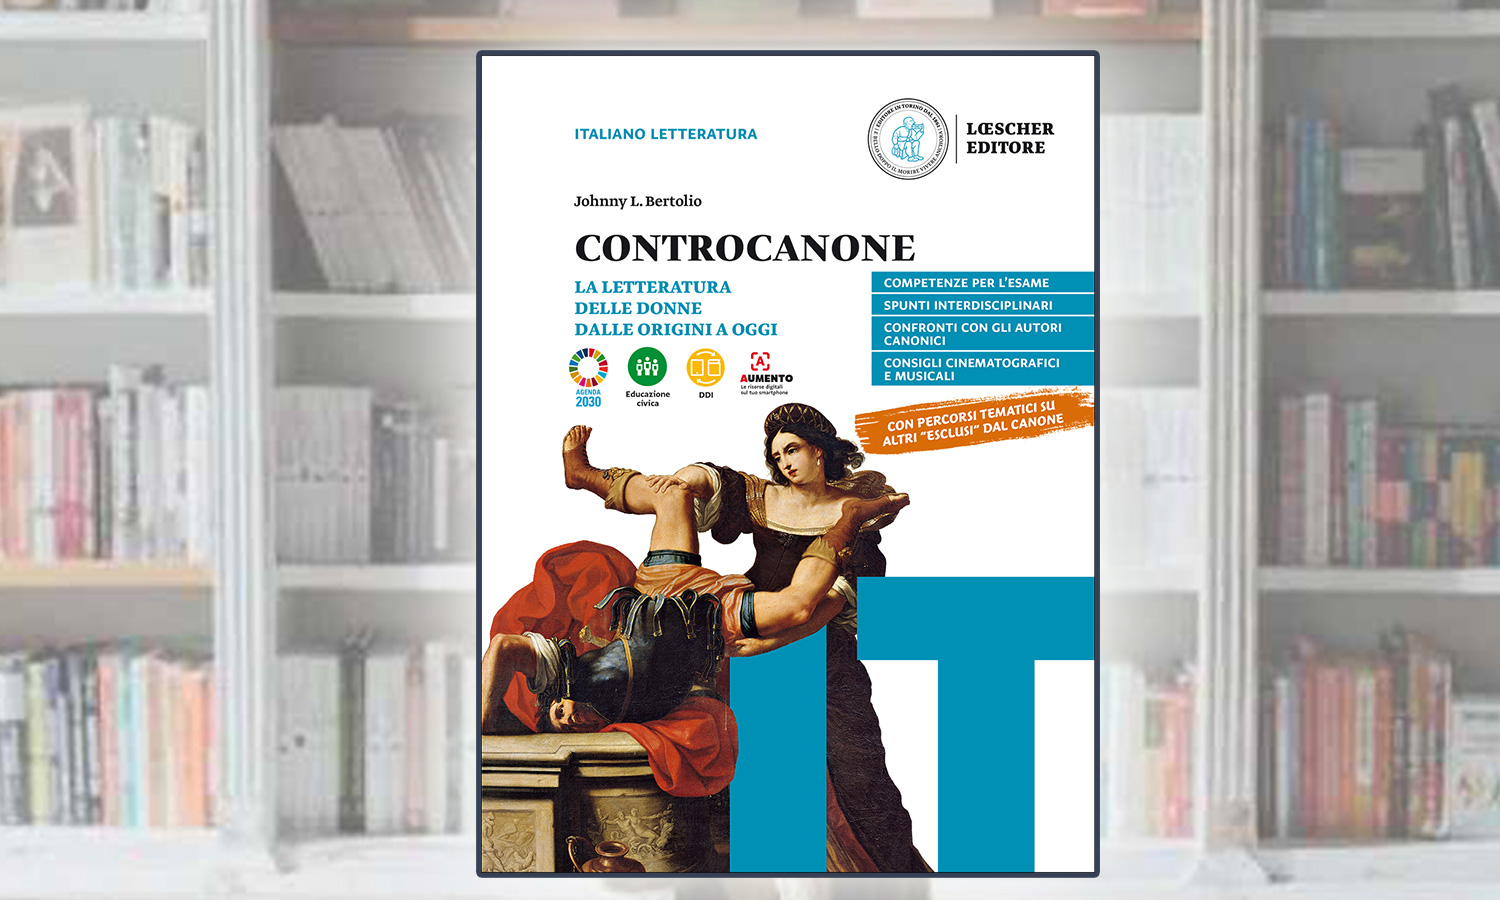 Recensione di "Controcanone" - Federico Saguineti su "Le cronache", 6 febbraio 2022